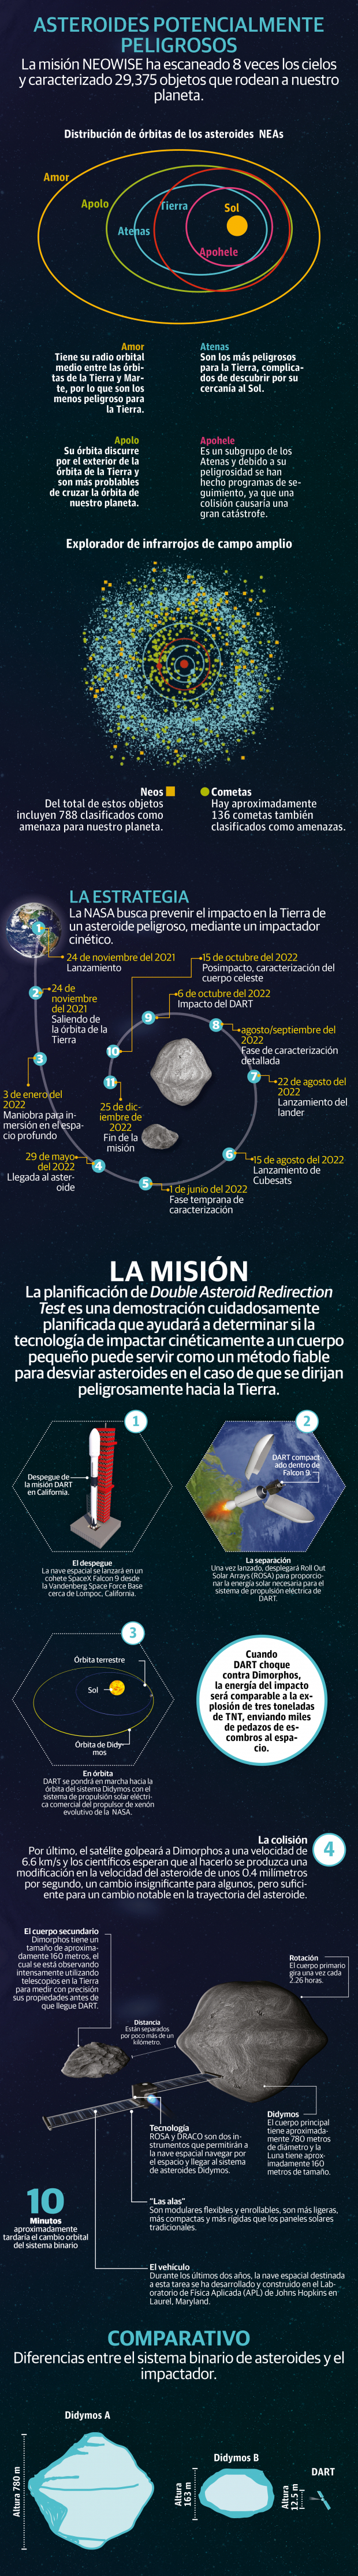 DART, la misión para salvar la Tierra de asteroides, lista para su lanzamiento